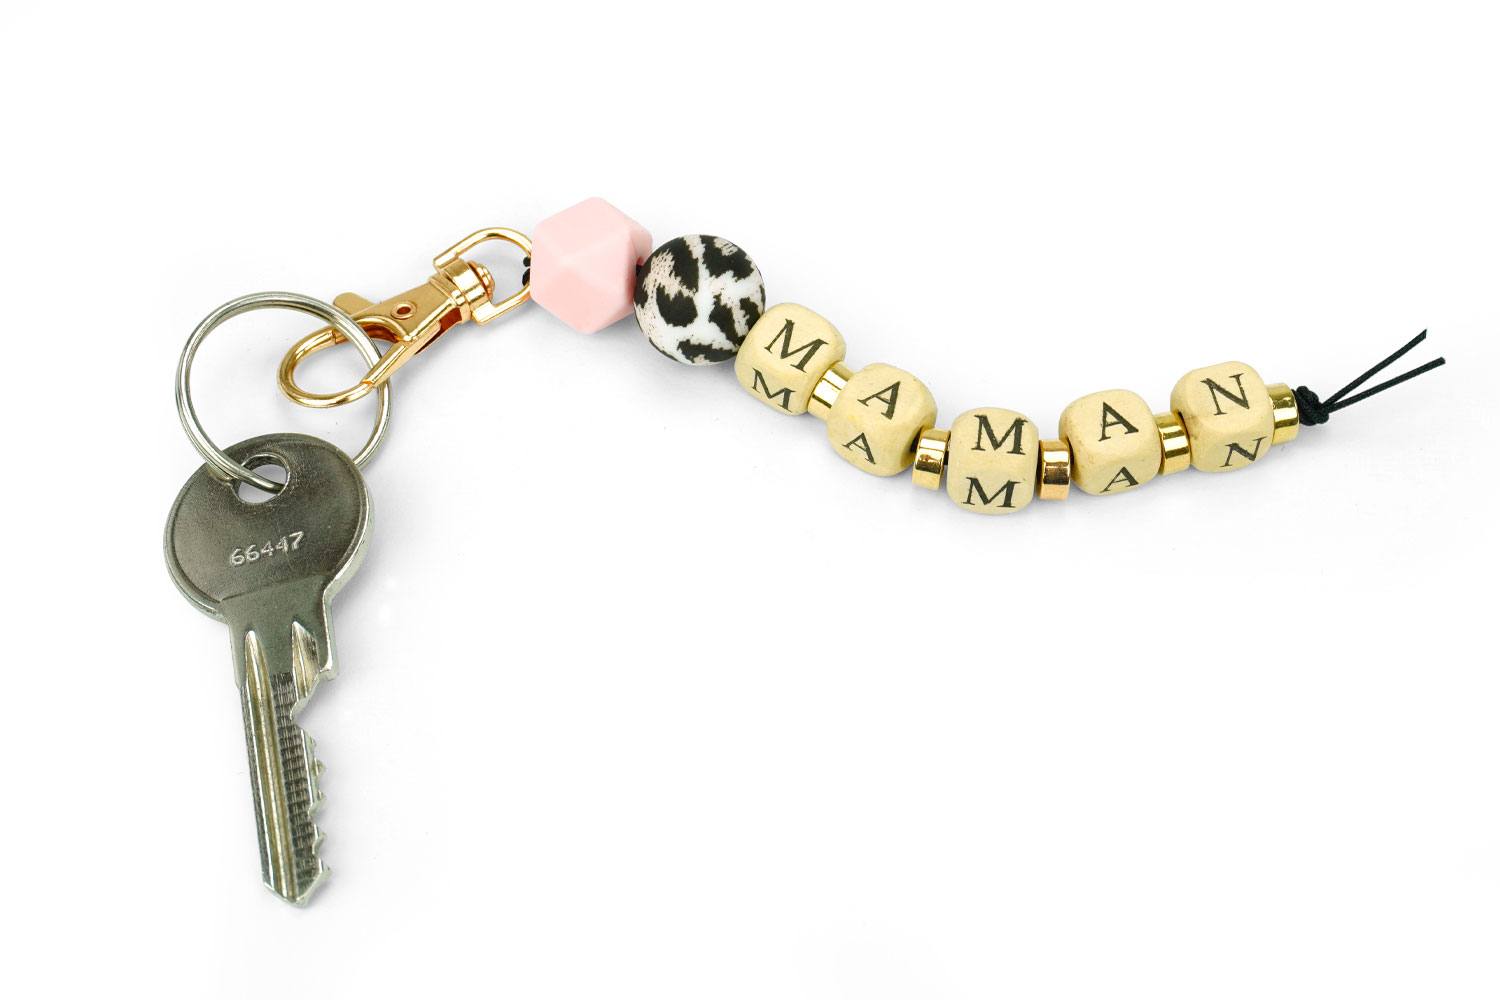 Porte-clés, porte-clés avec mousqueton - porte-clés plat 24 mm avec  mousqueton